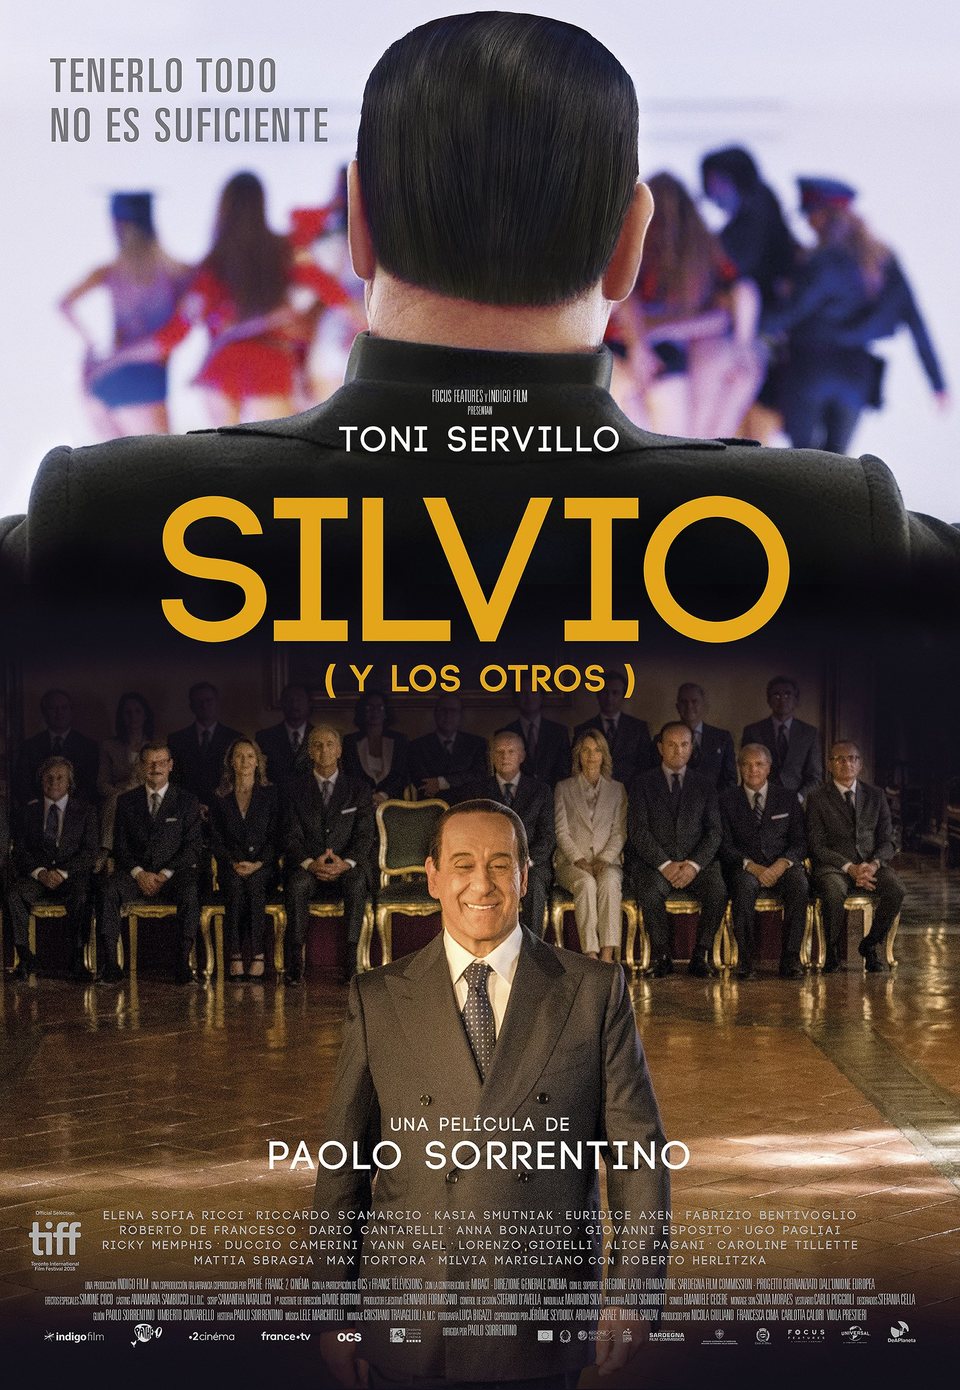 Cartel de Silvio (y los otros) - Poster español 'Silvio (y los otros)'